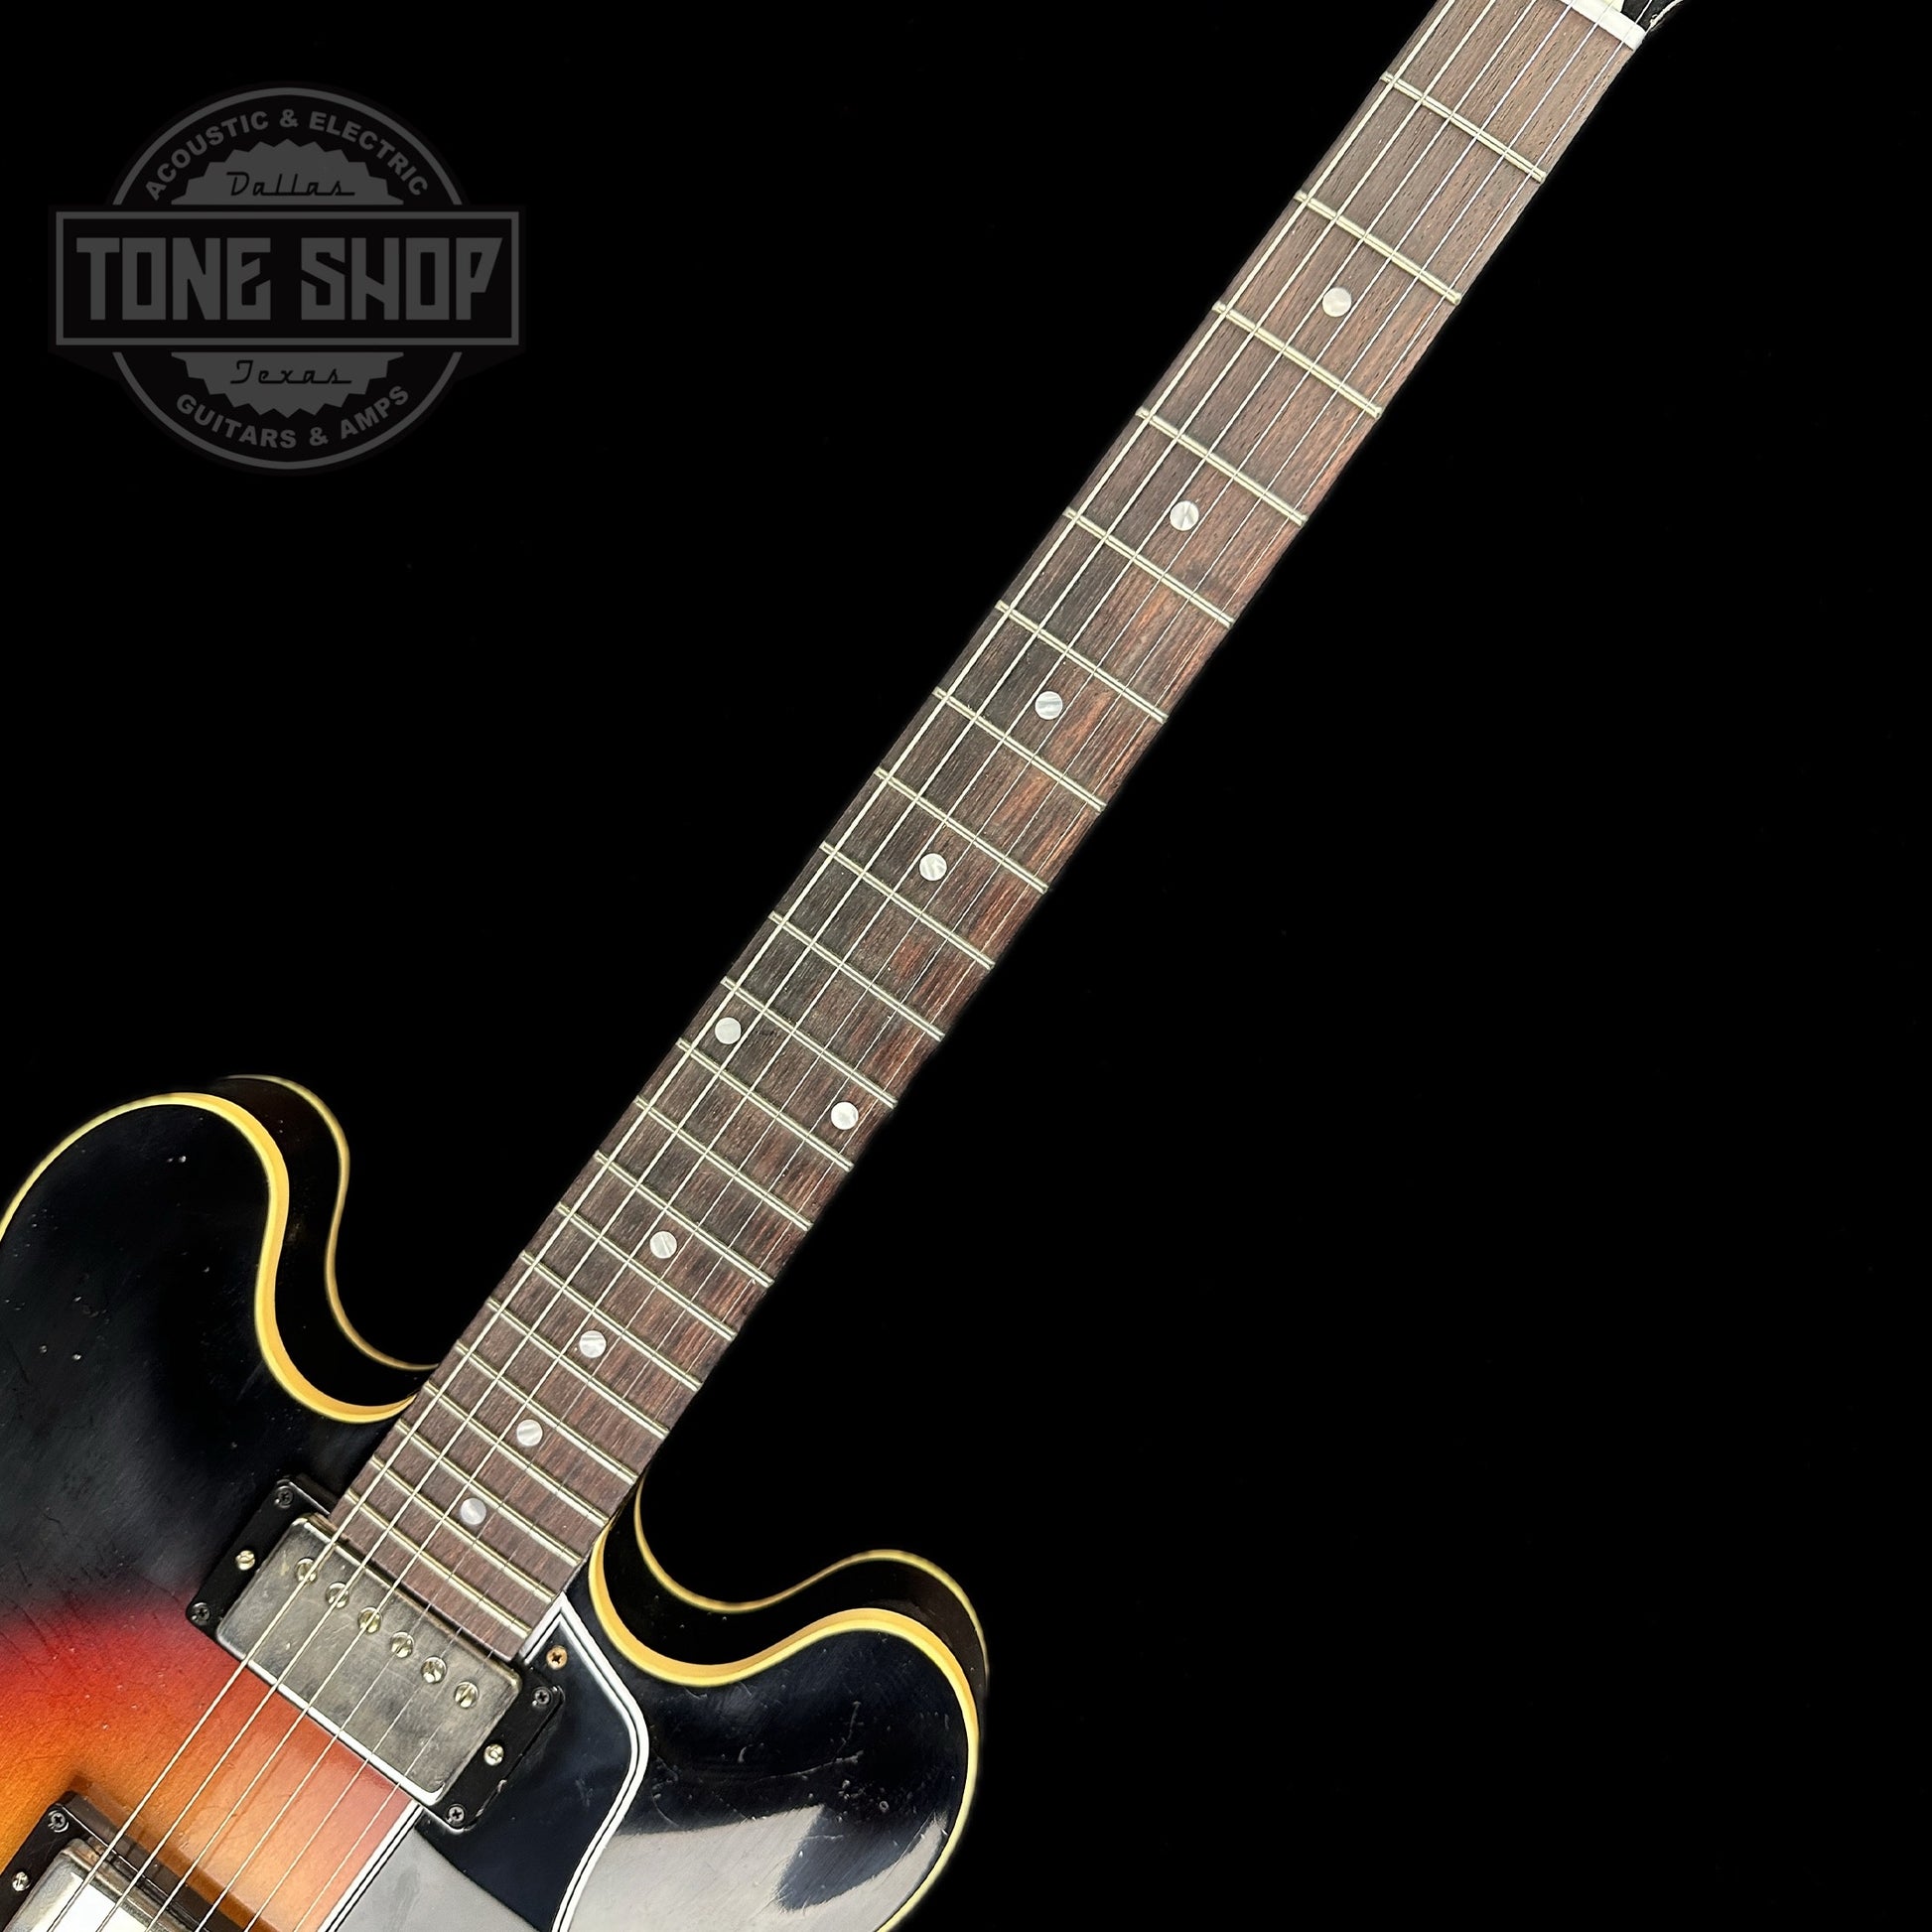 Fretboard of Gibson Custom Shop 1958 ES-335 Tri-burst Murphy Lab Light Aged Limited.